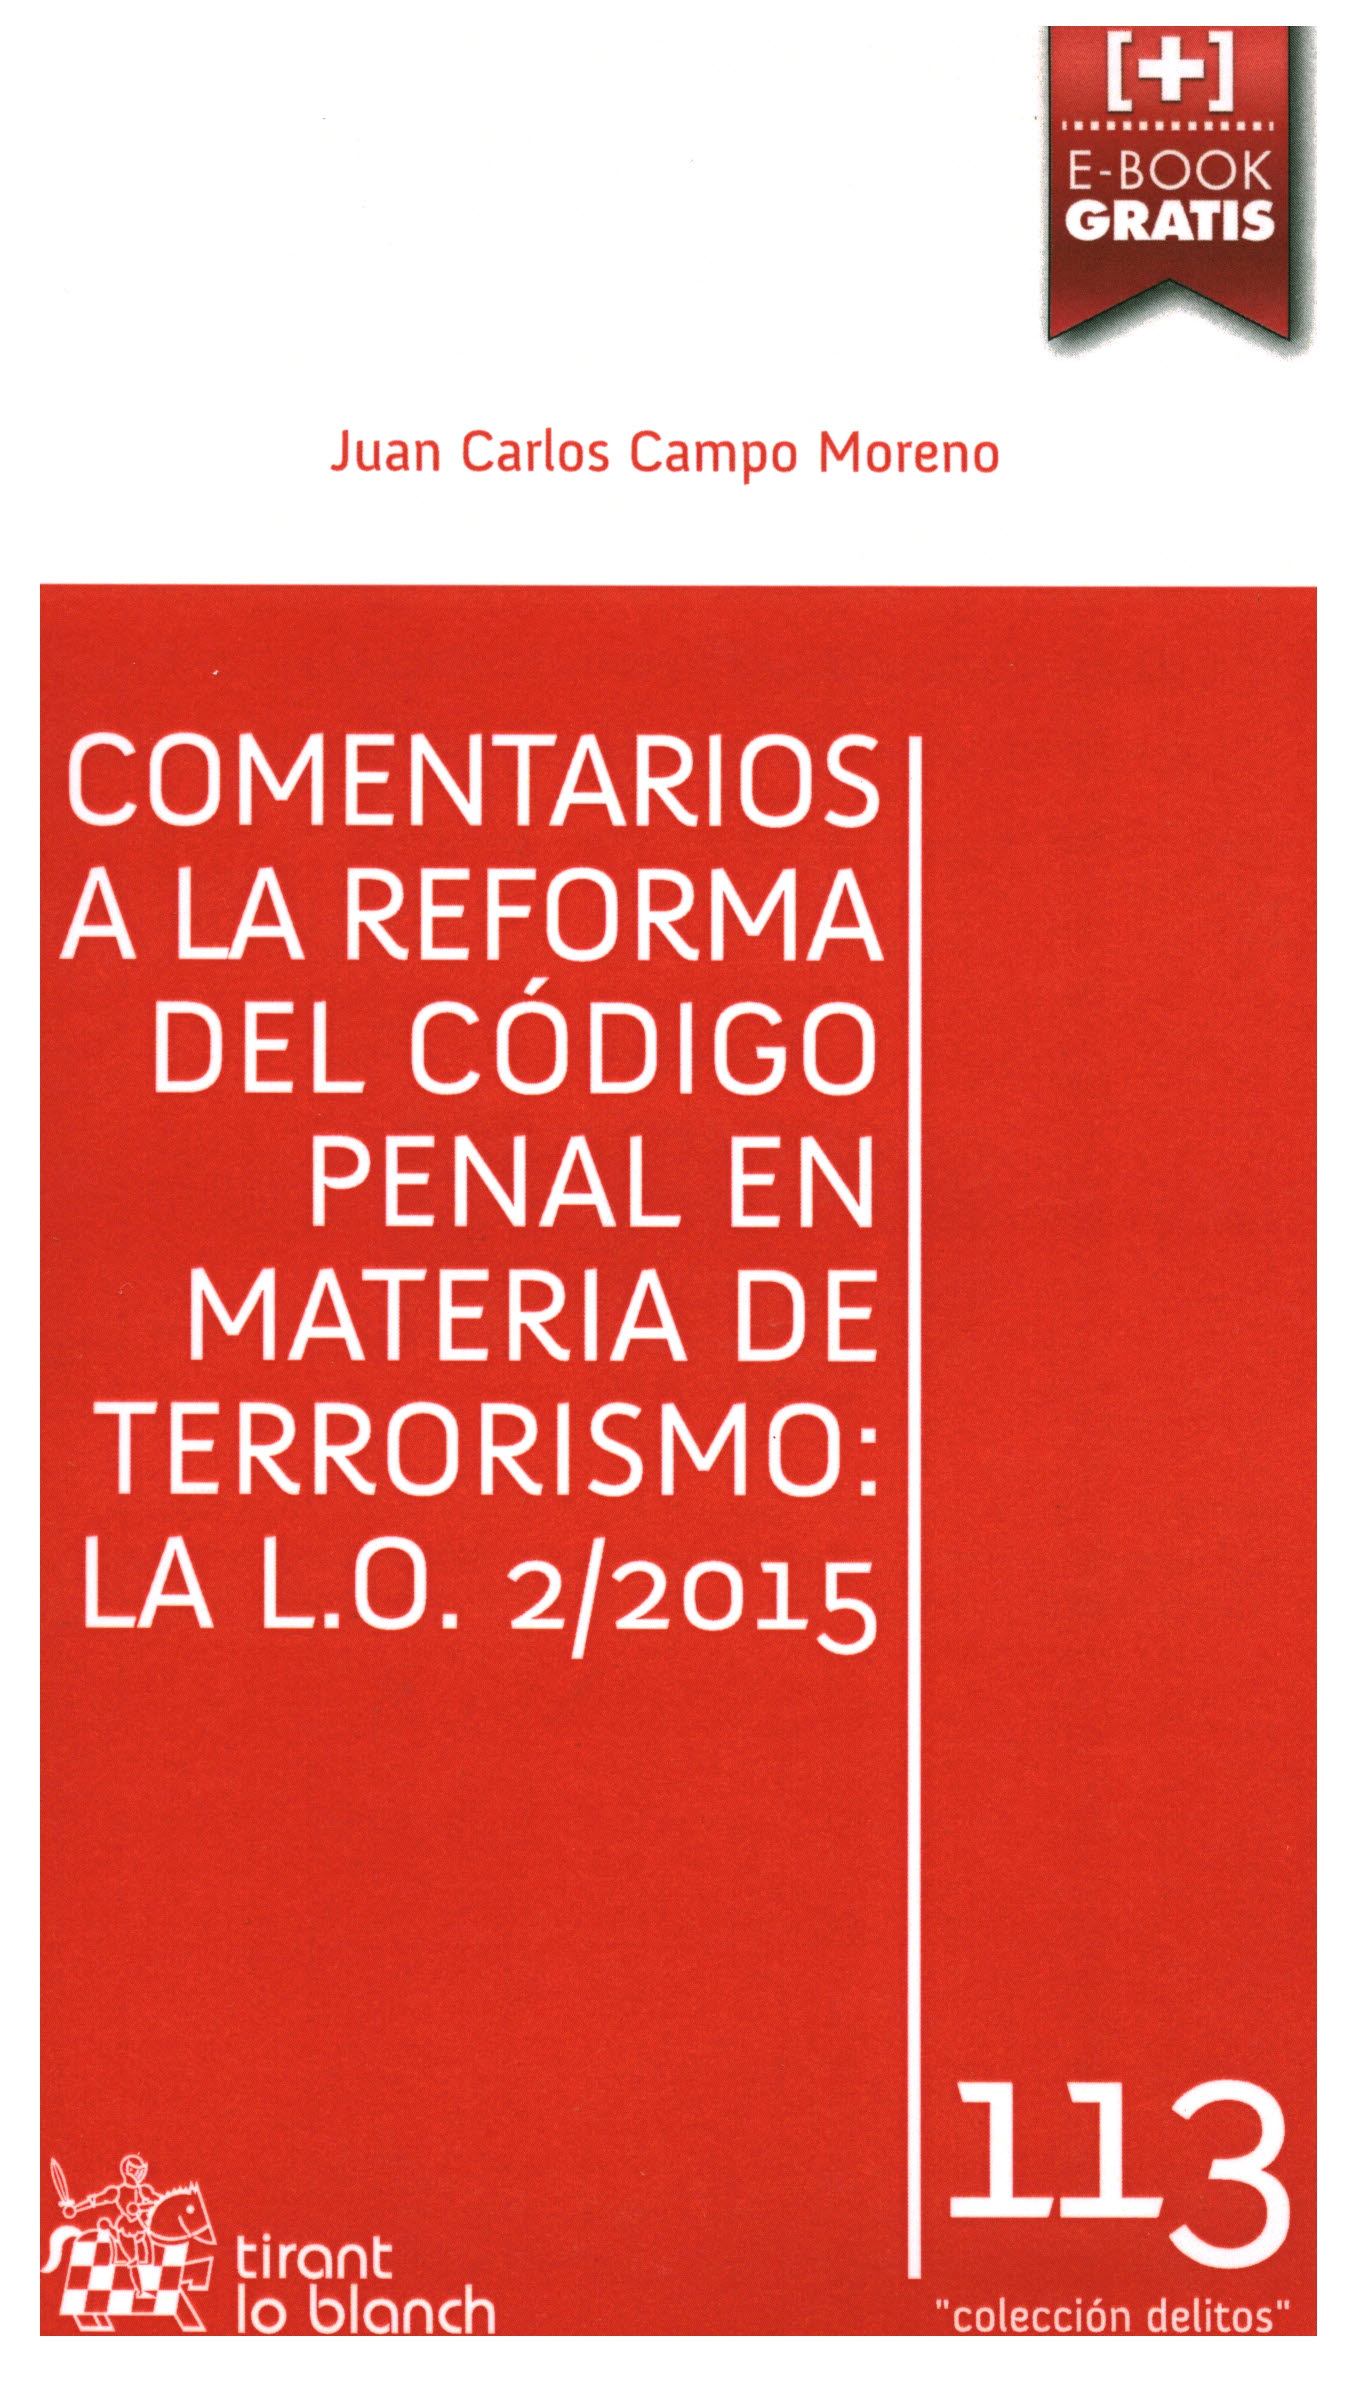 Comentarios a la reforma del código penal en materia de terrorismo: La L.O: 2/2015